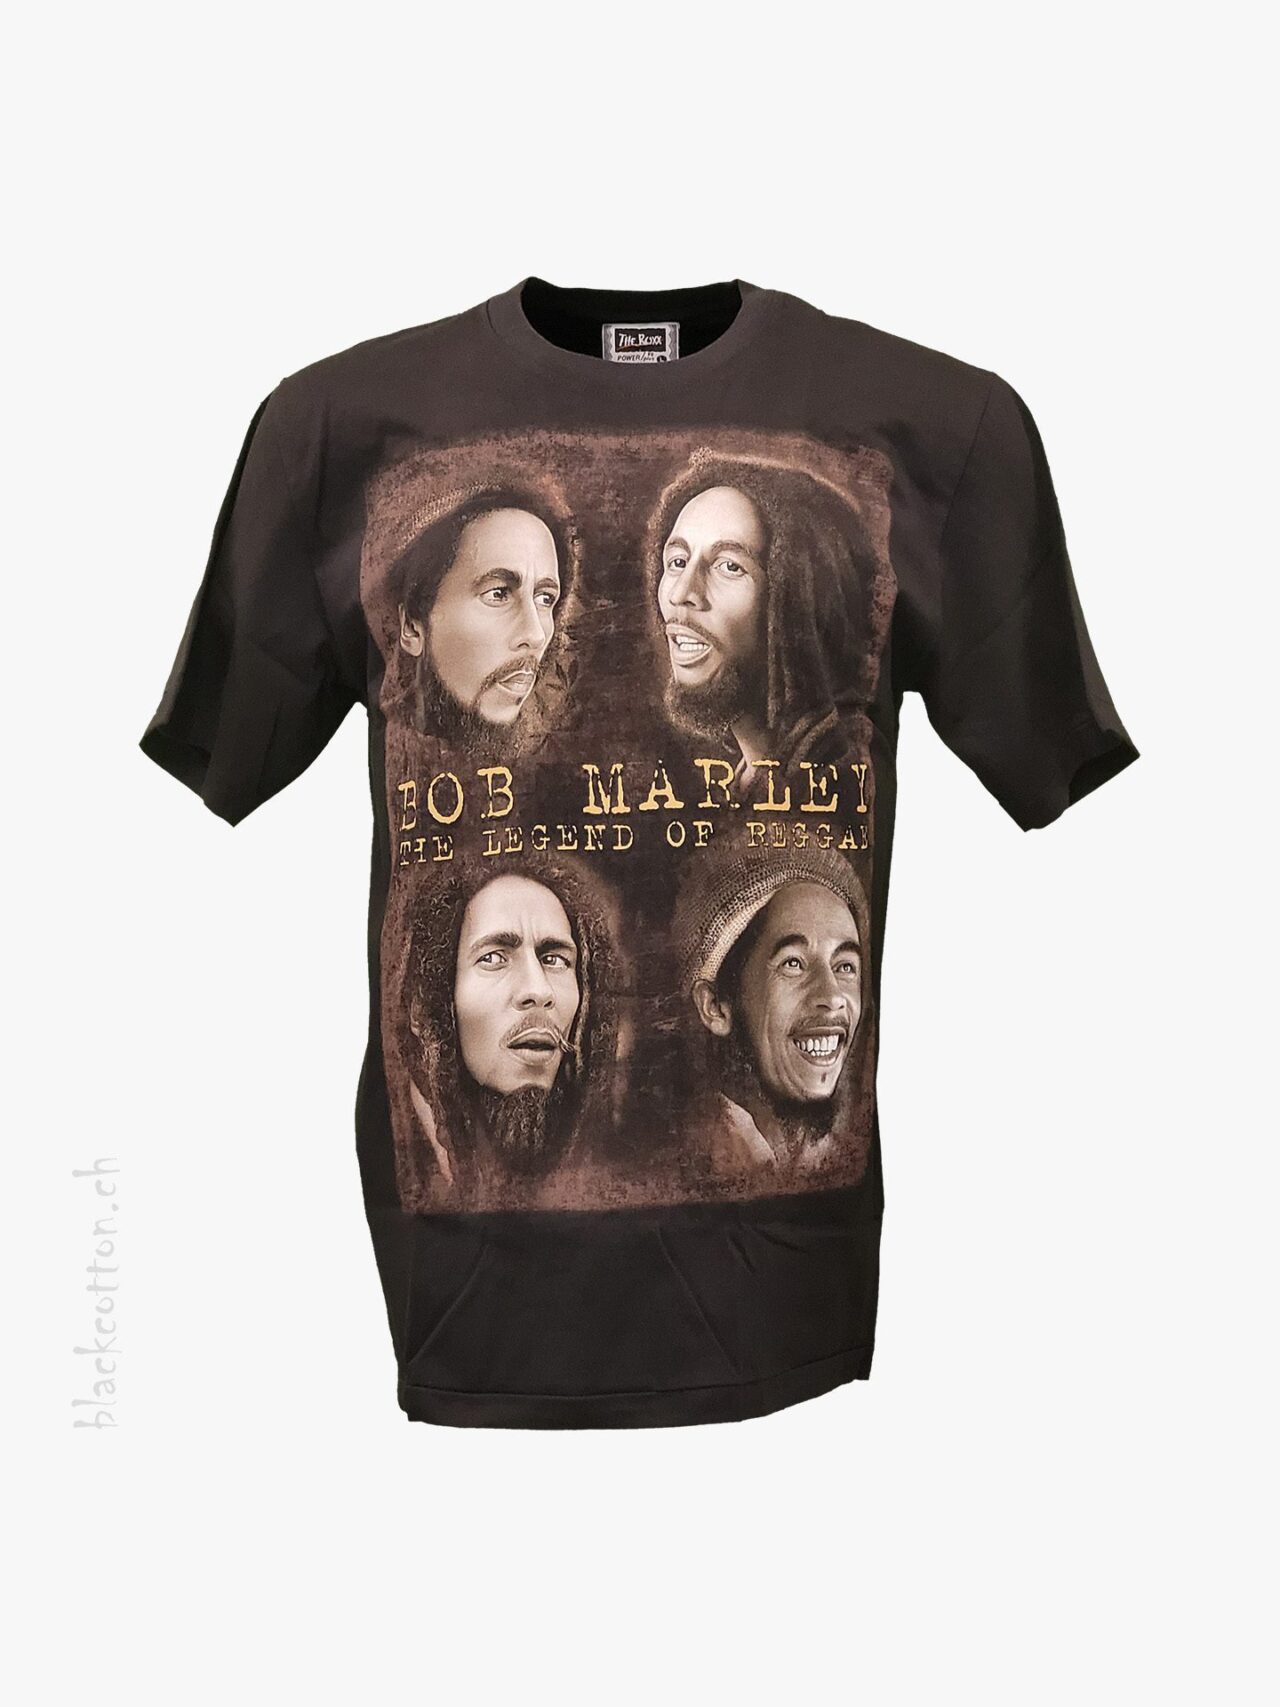 Bob Marley - The Legend of Reggae T-Shirt